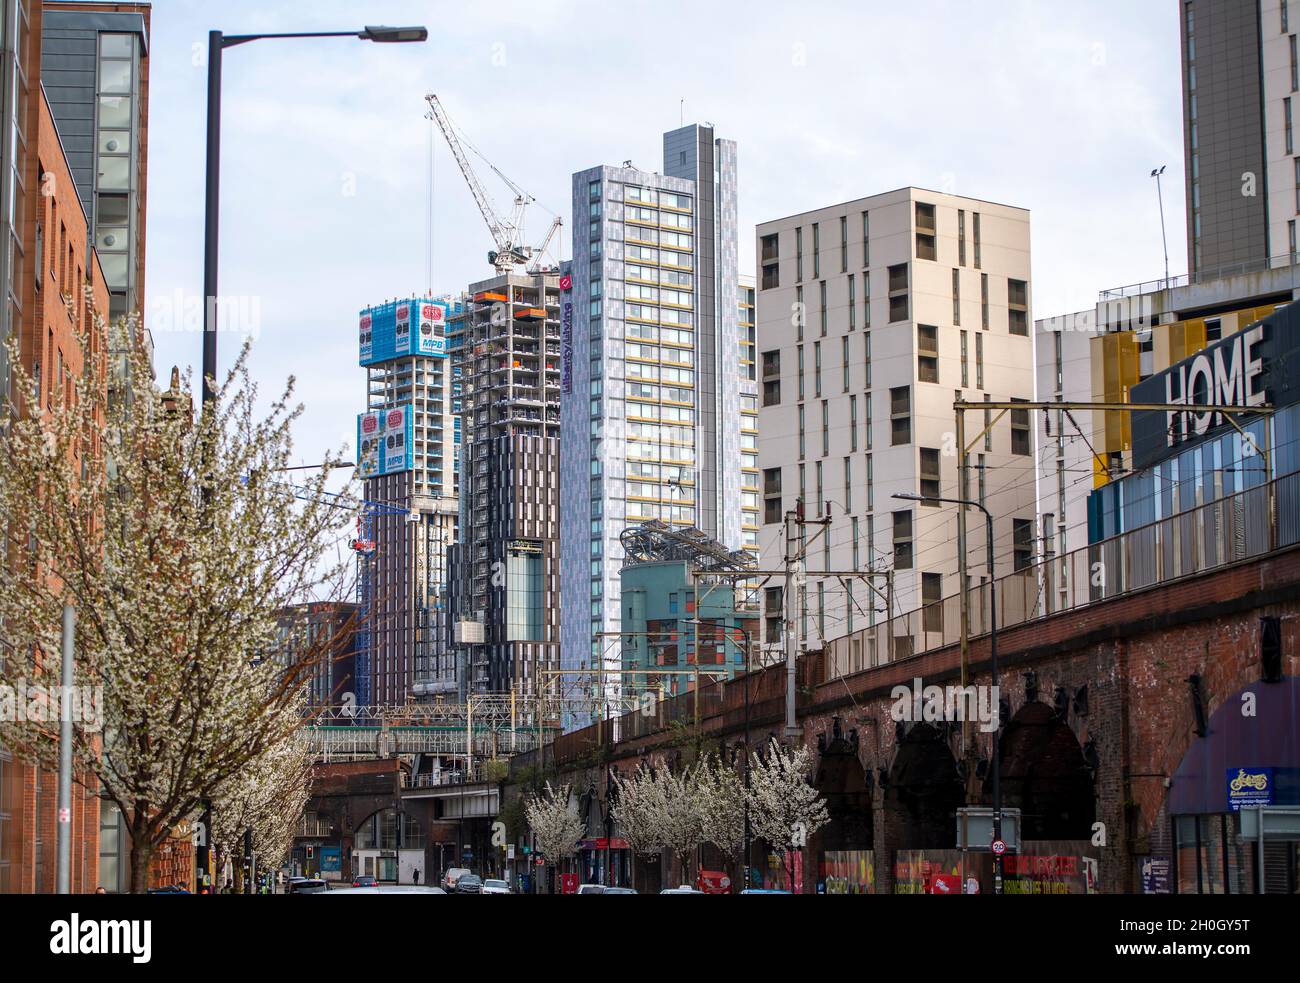 Bauarbeiten an der Whitworth Street in Manchester, Großbritannien. Bilddatum: Donnerstag, 19. März 2020. Foto: Anthony Devlin Stockfoto